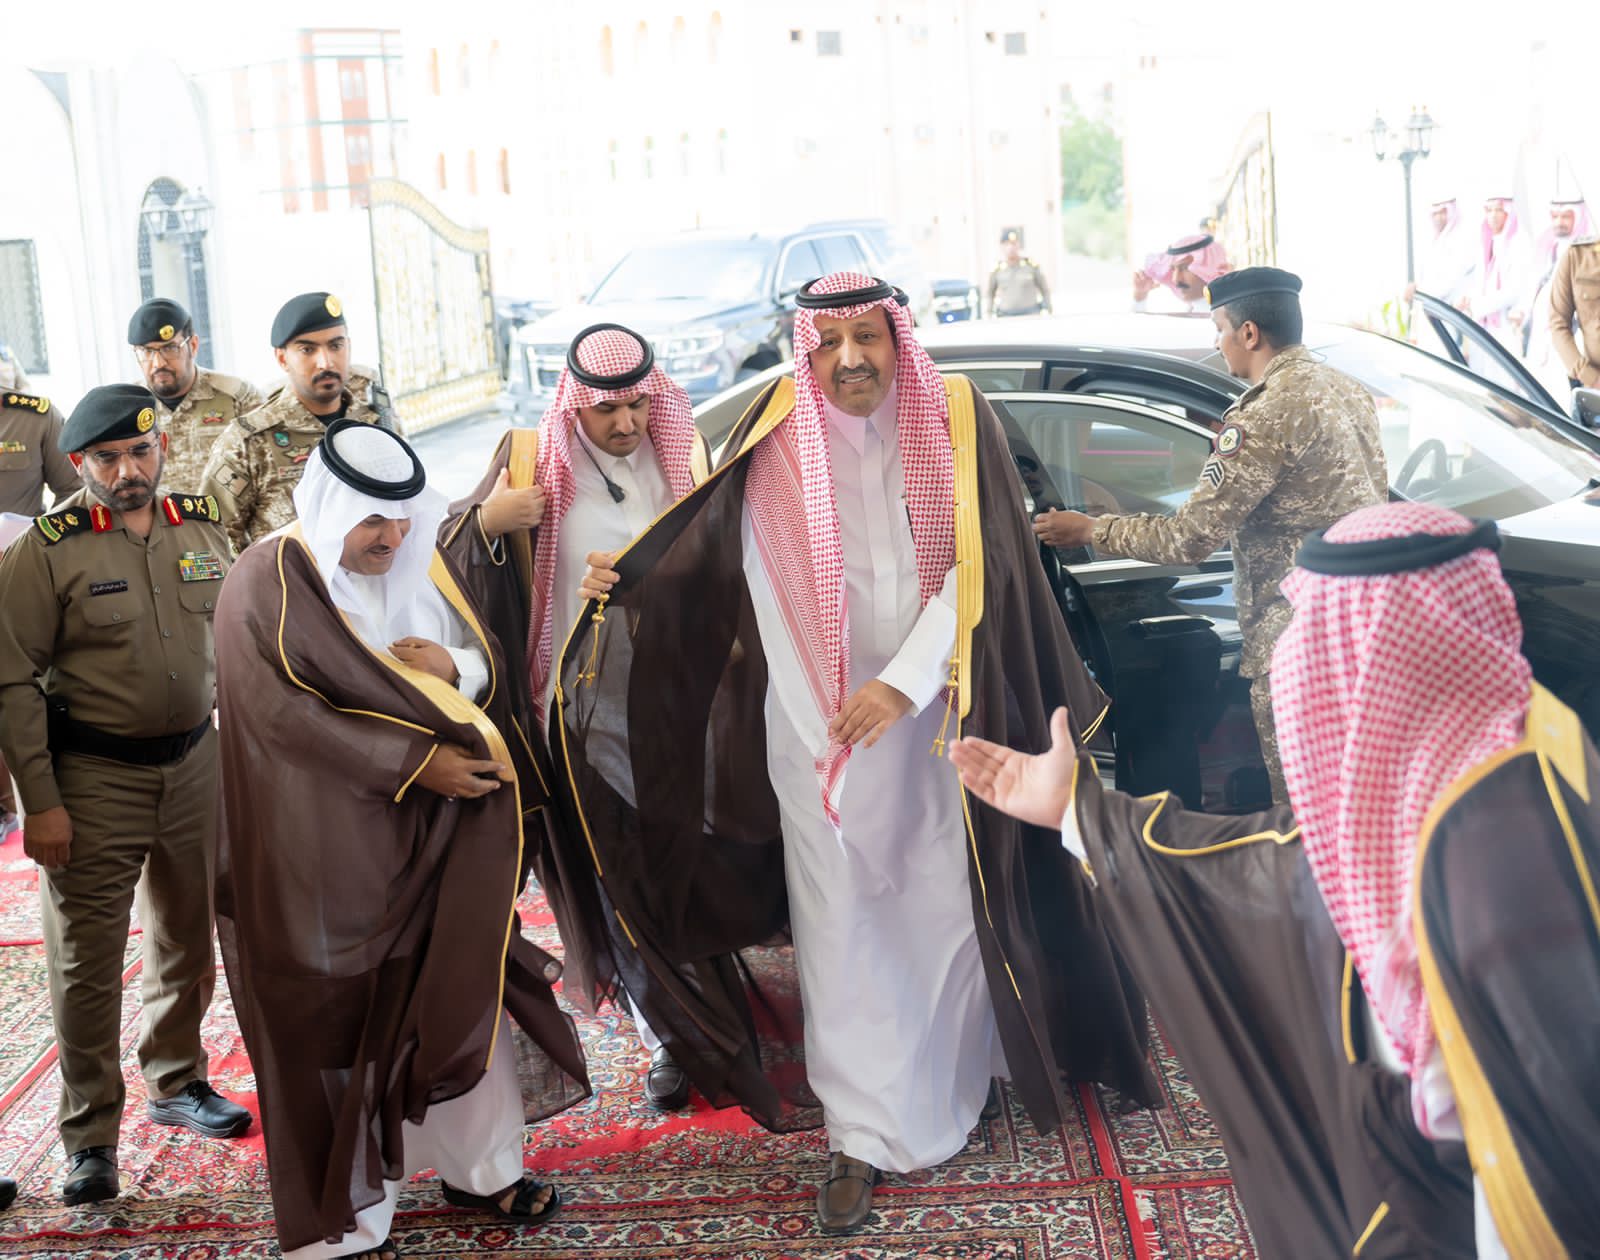 أمير الباحة يزور محافظة قلوة ويلتقي الأهالي والمسؤولين ويدشن عدداً من المشاريع التنموية